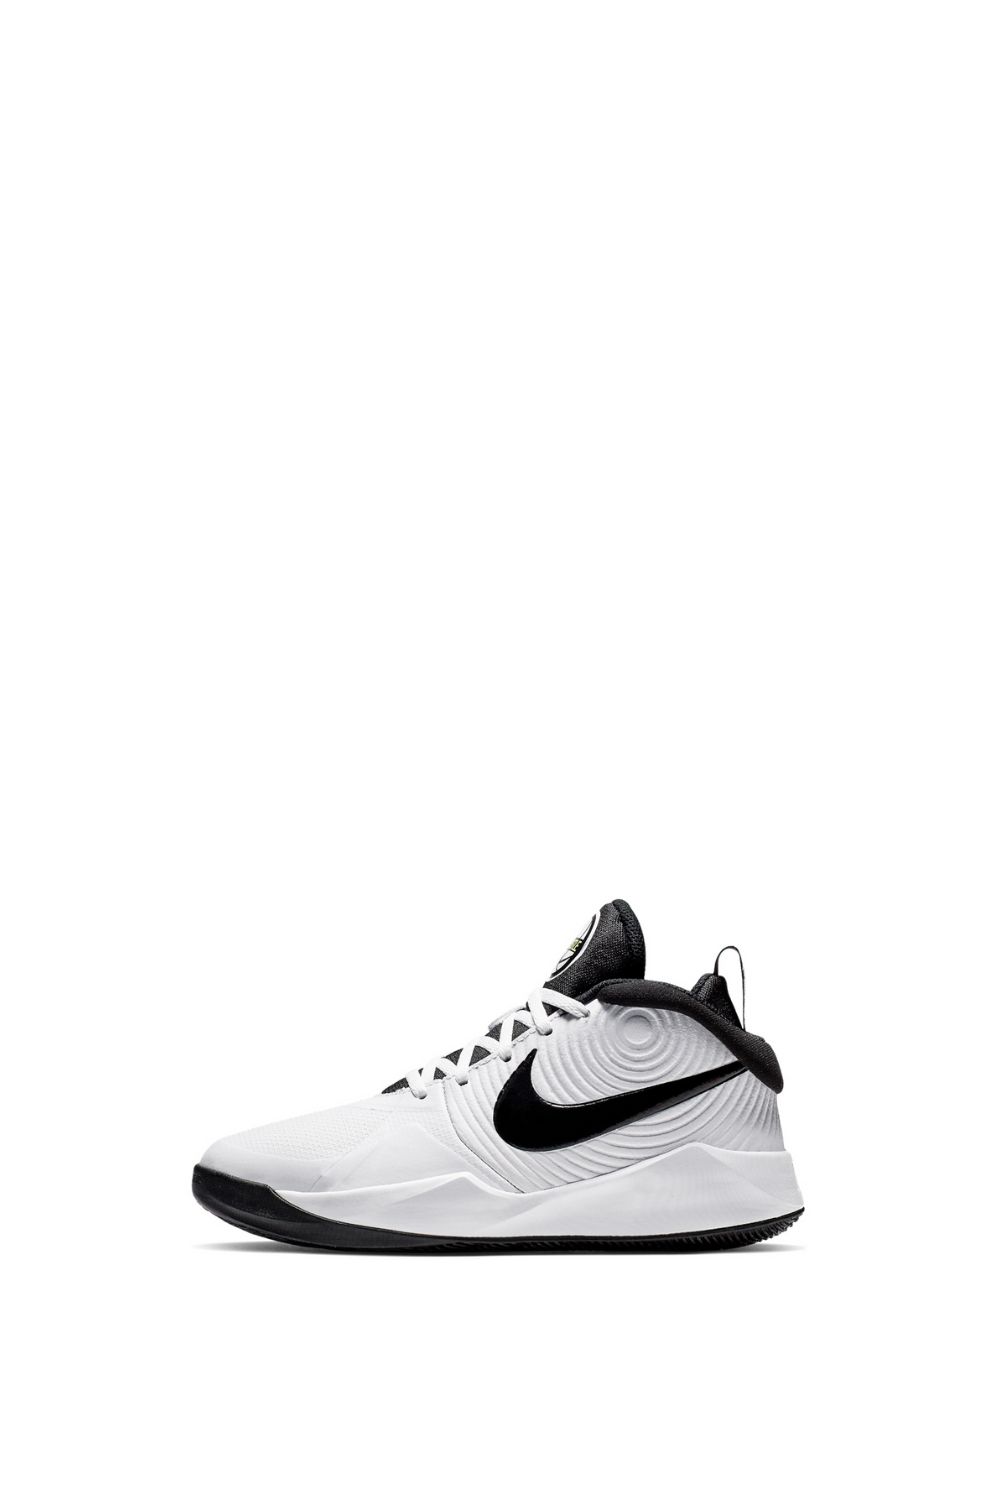 NIKE - Παιδικά παπούτσια μπάσκετ Nike Team Hustle λευκά Παιδικά/Boys/Παπούτσια/Αθλητικά